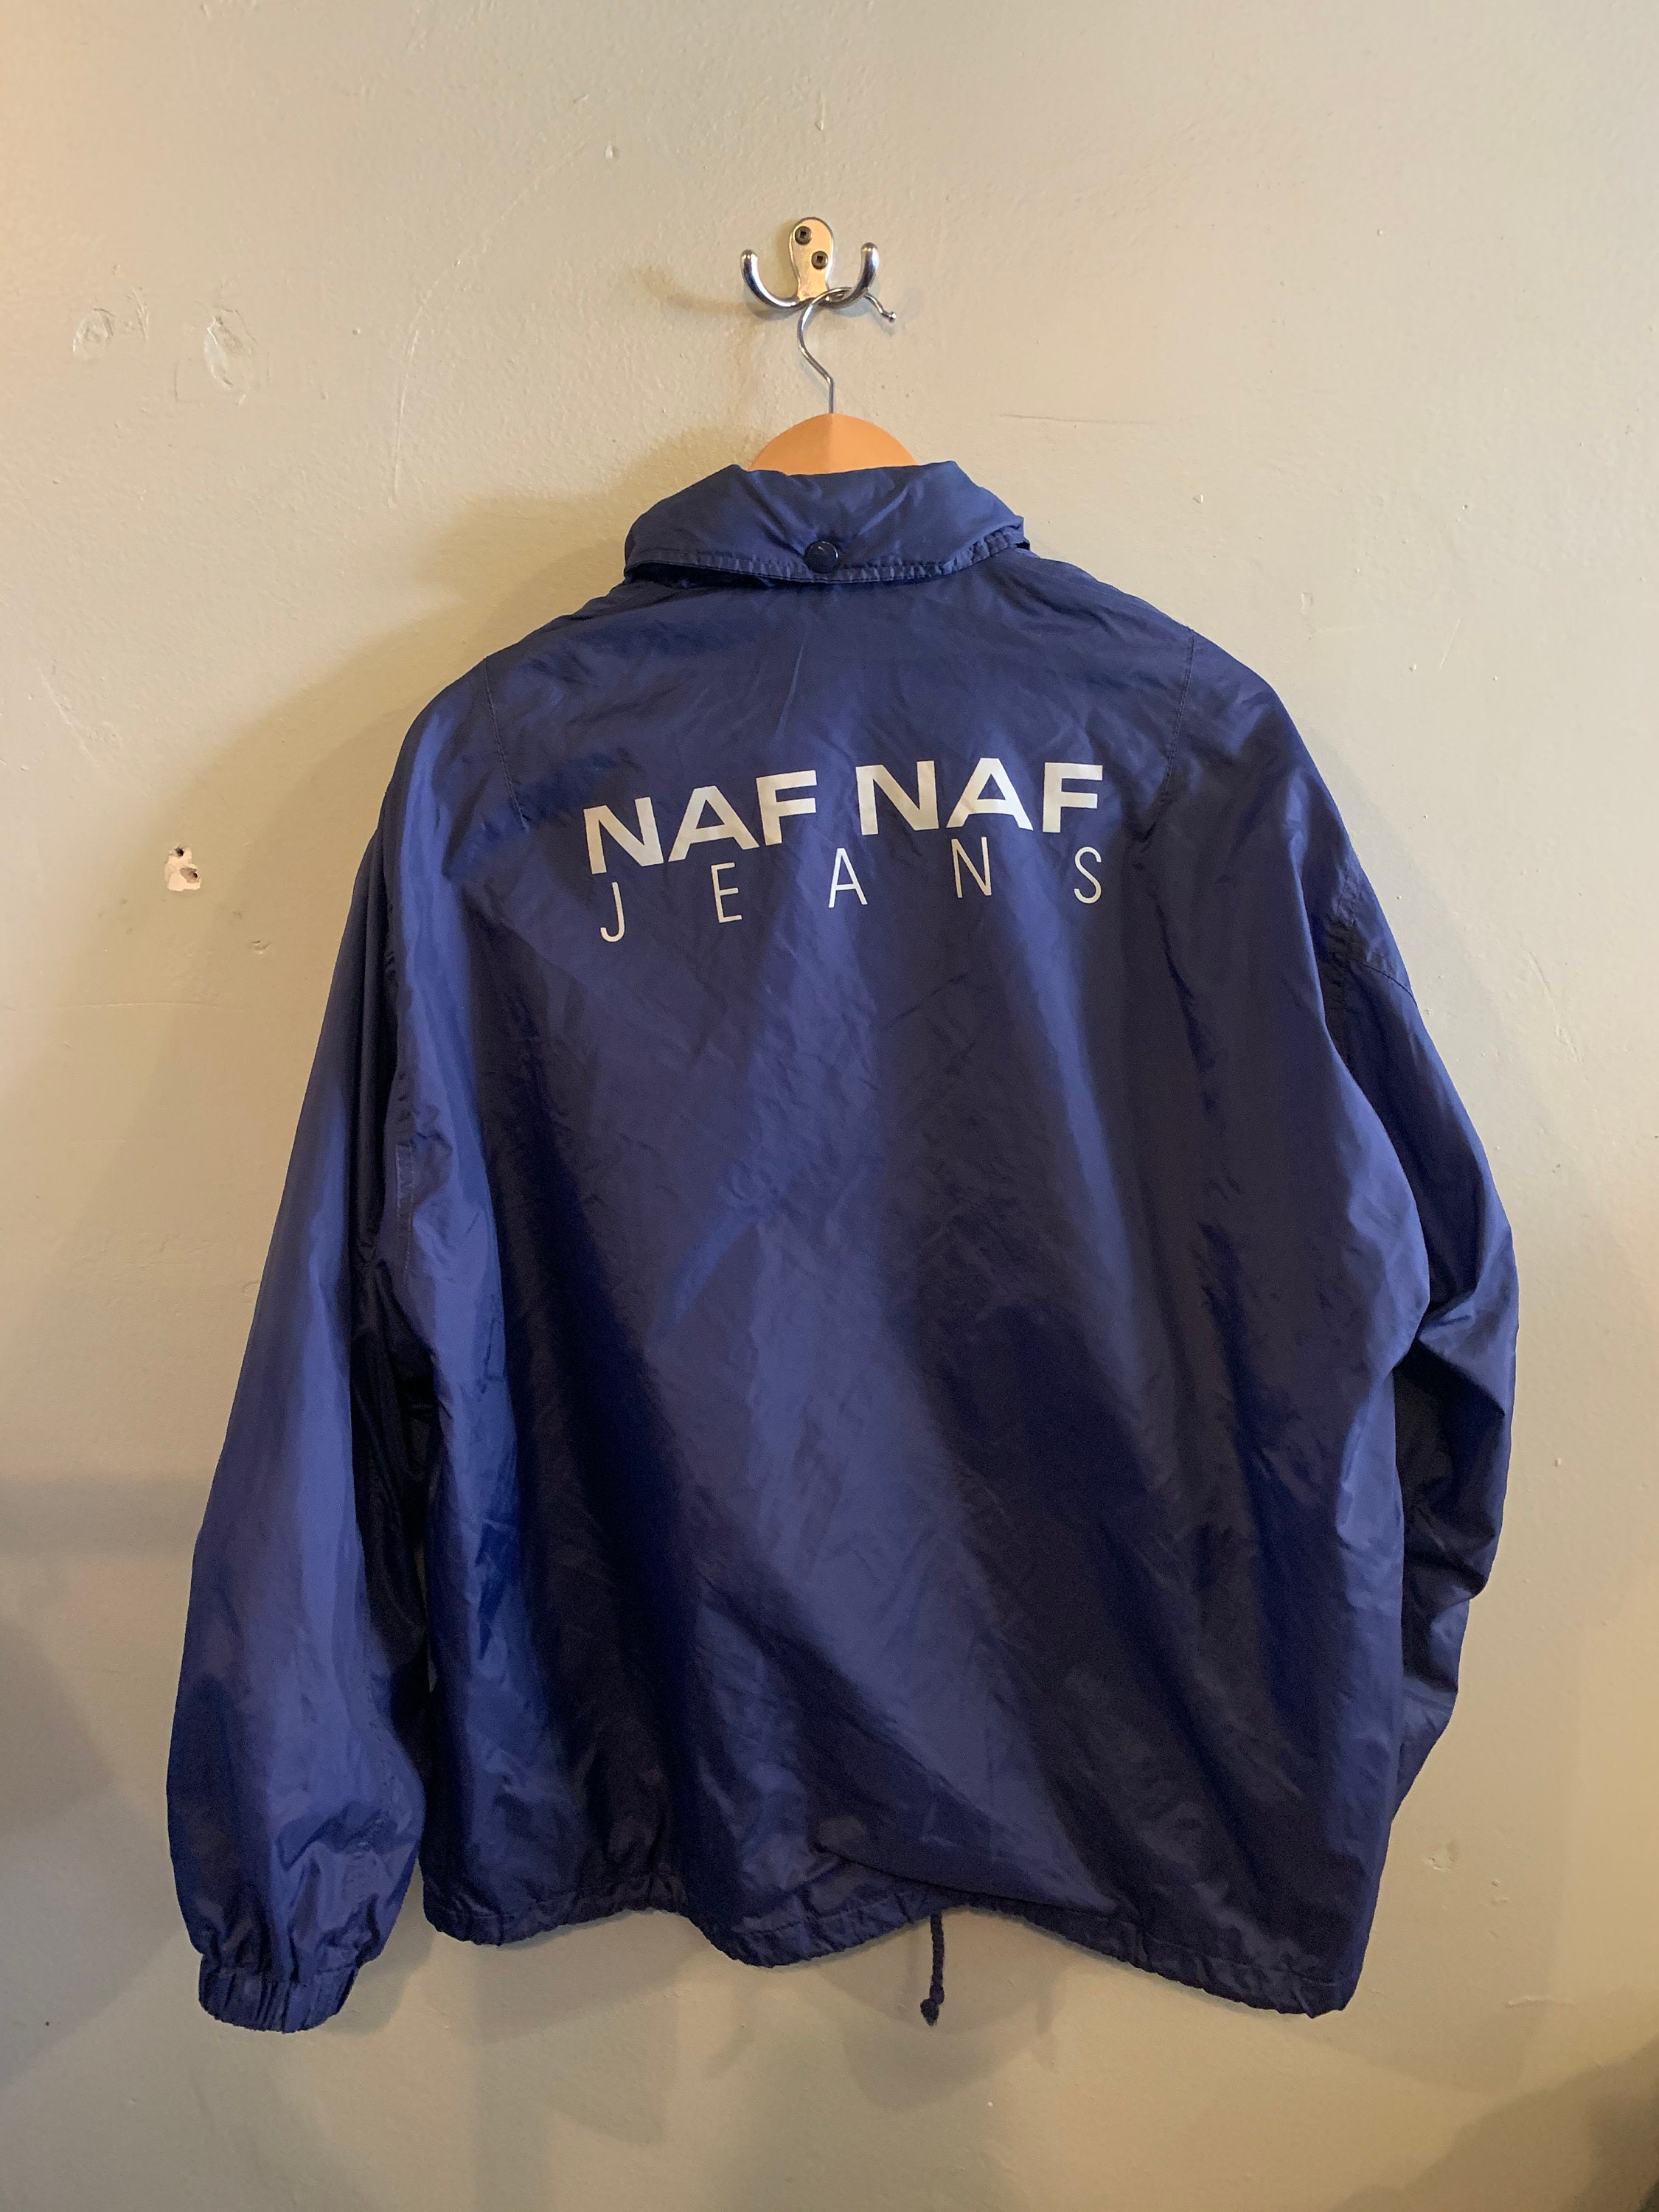 NAF NAF / Vintage Jacket / 90s Vintage / Naf Naf Windbreaker / French  Vintage / 90s Hip Hop / Blue Jacket / Menswear / Mens M. - Etsy